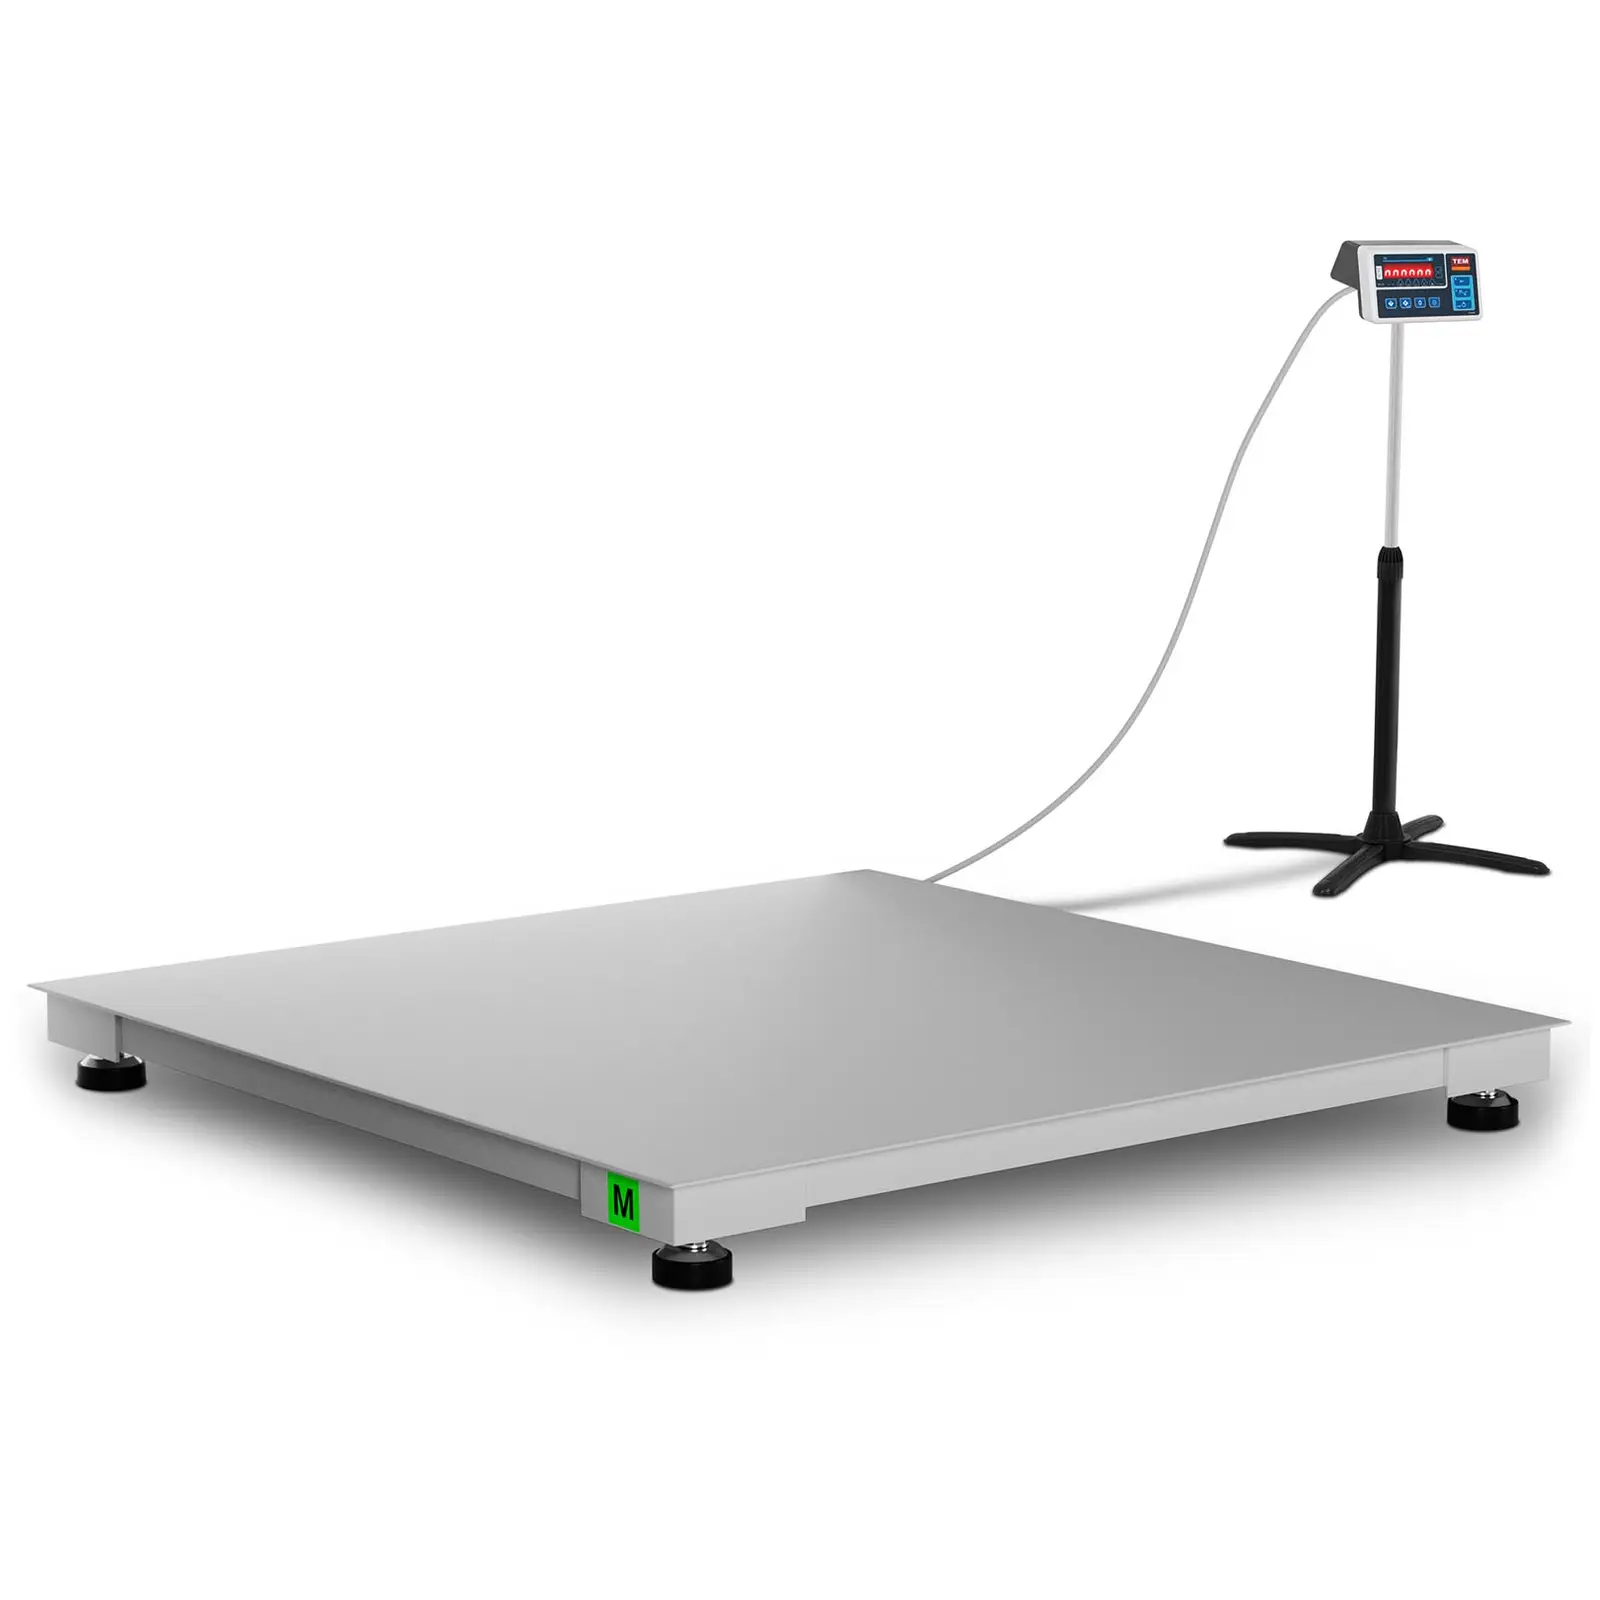 Bilancia da pavimento - tarata - 600 kg / 200 g - 120 x 120 cm - LED